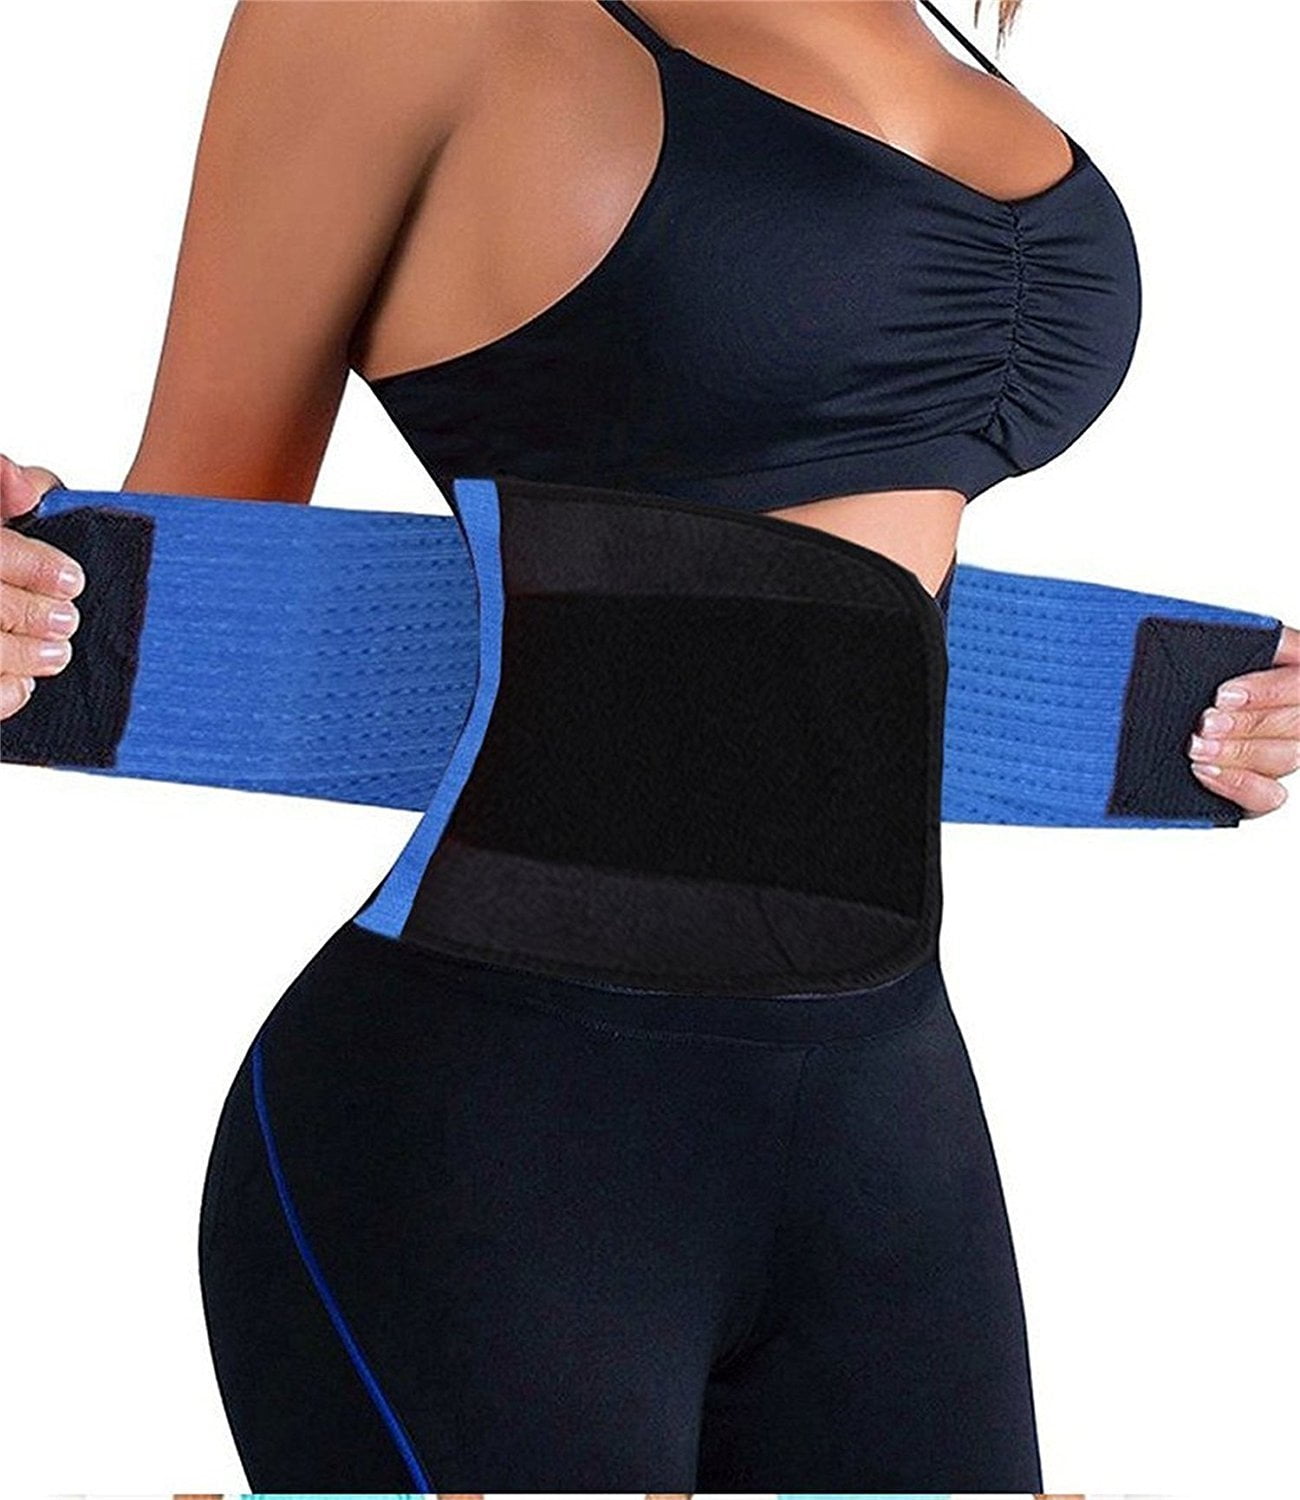 Women Waist Trainer Belt Waist Cincher Trimmer Slimming Body Shaper Belt for Weight Loss Sport Workout 